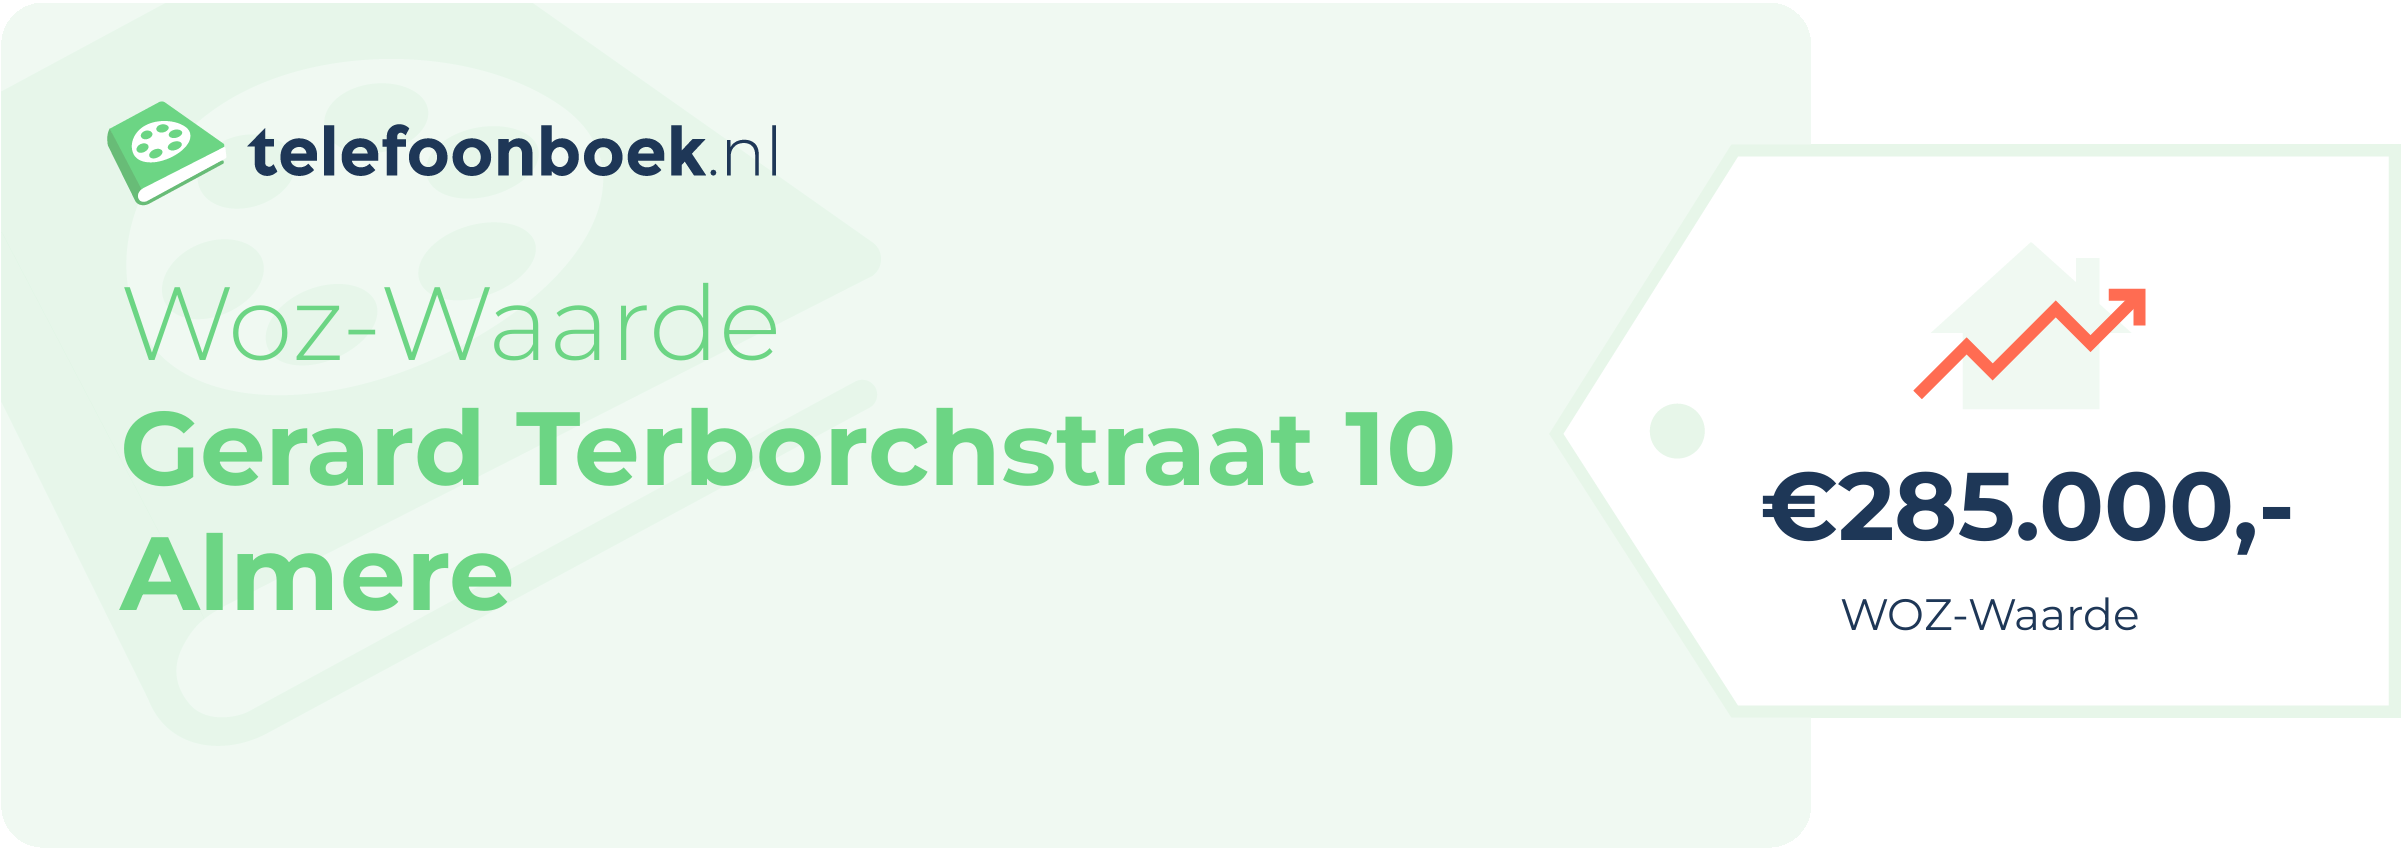 WOZ-waarde Gerard Terborchstraat 10 Almere